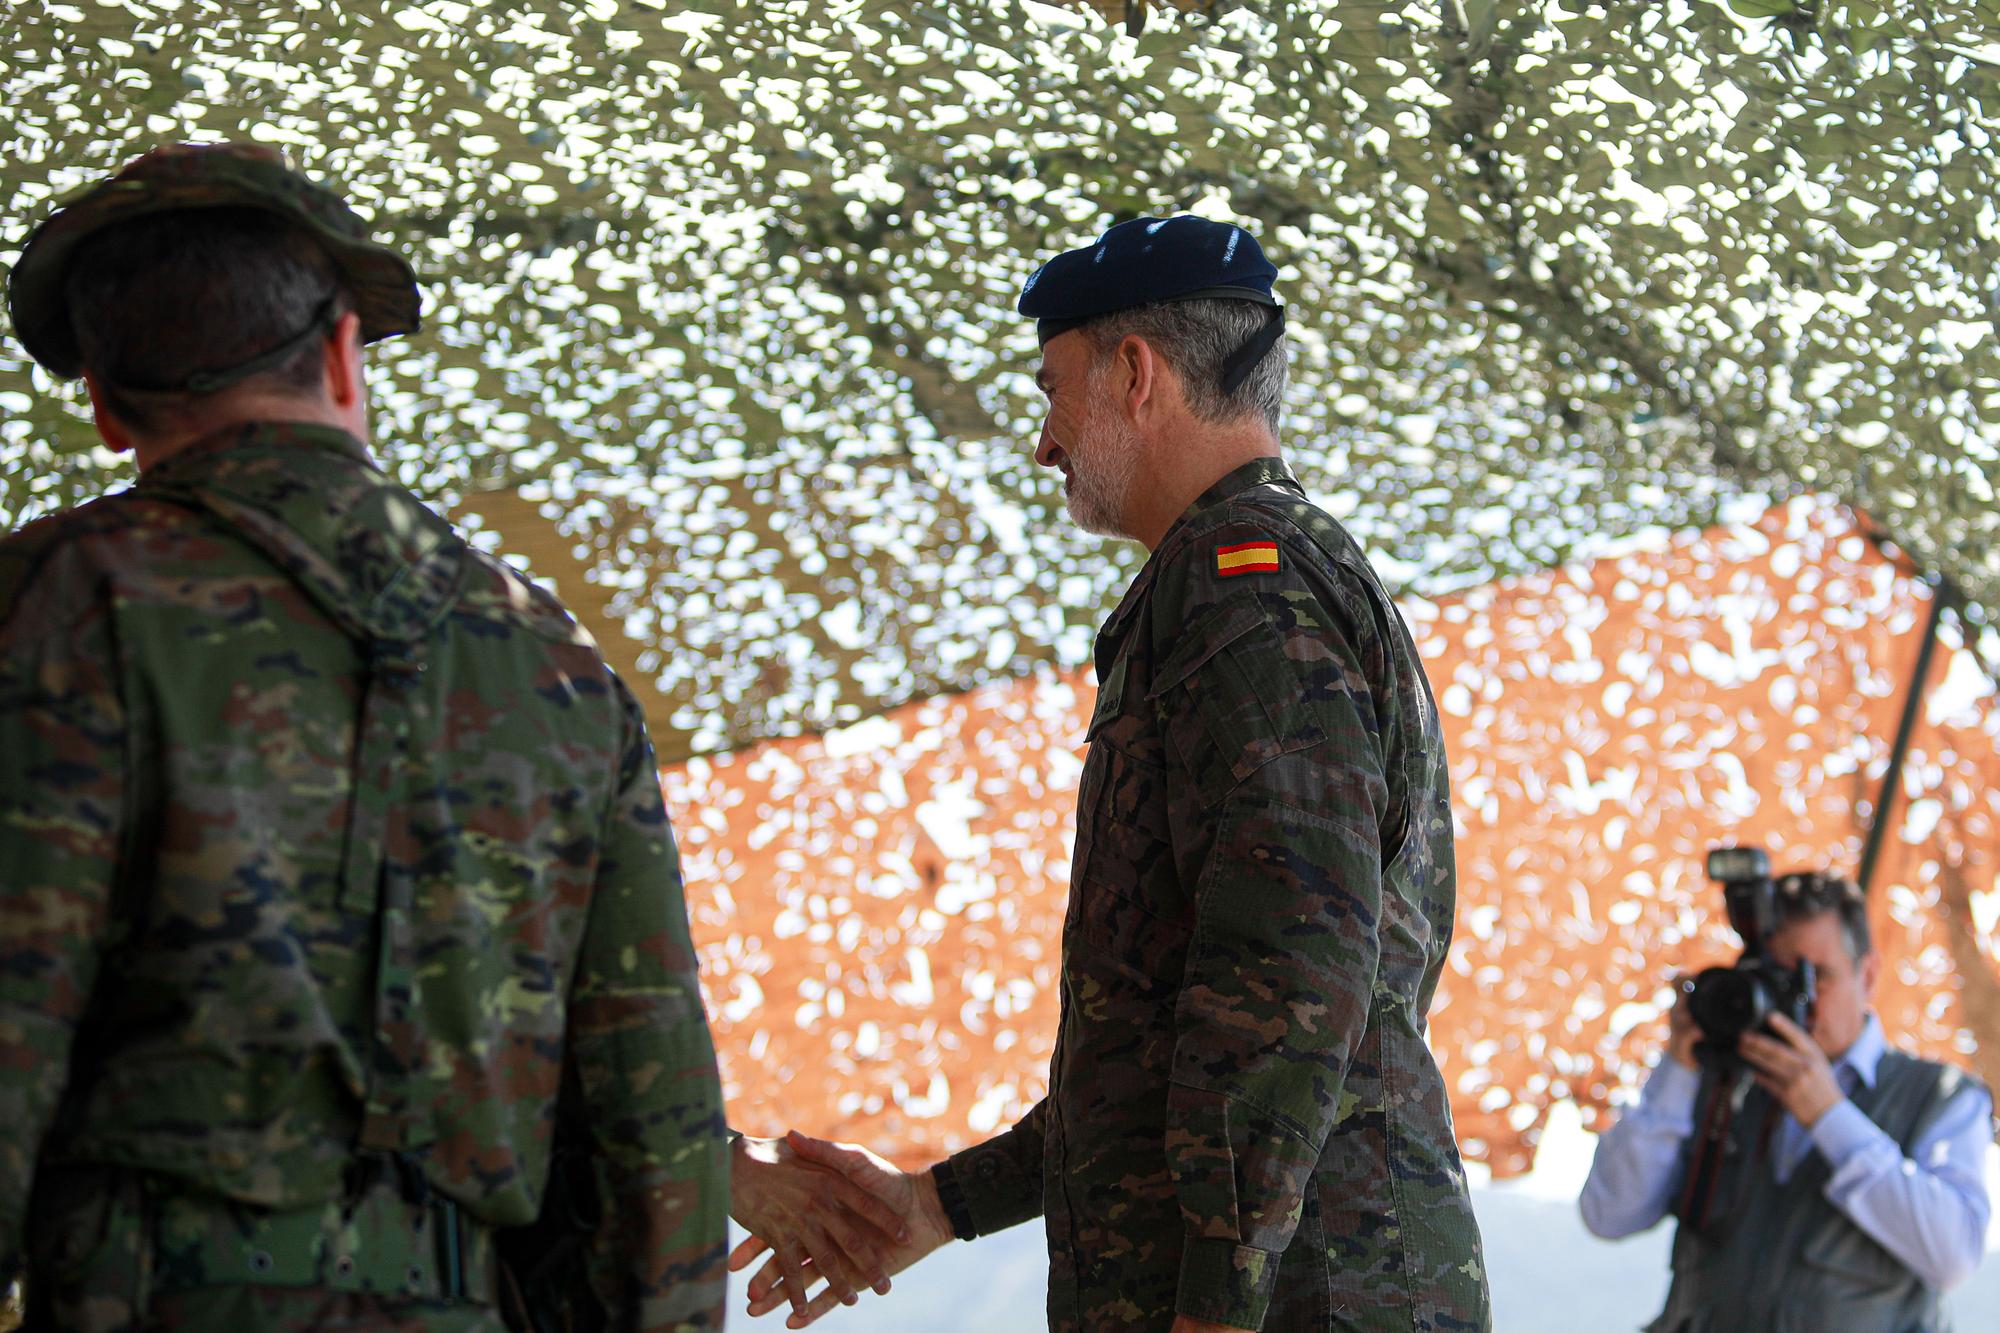 Mira aquí todas las fotos de la visita del Rey a las maniobras militares de Ibiza